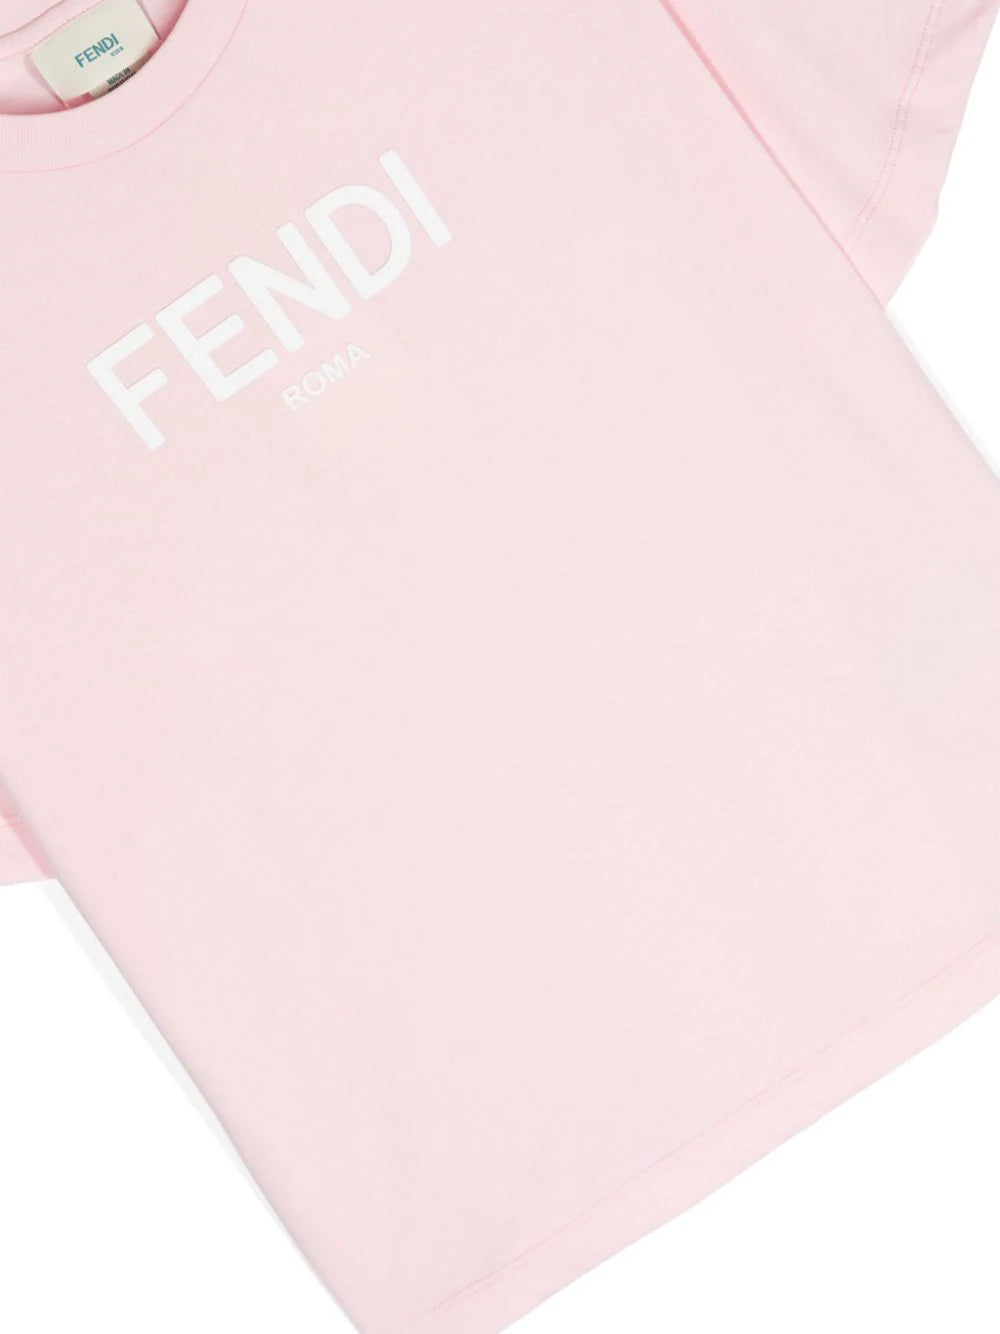 Fendi Kids logo-print cotton T-shirt